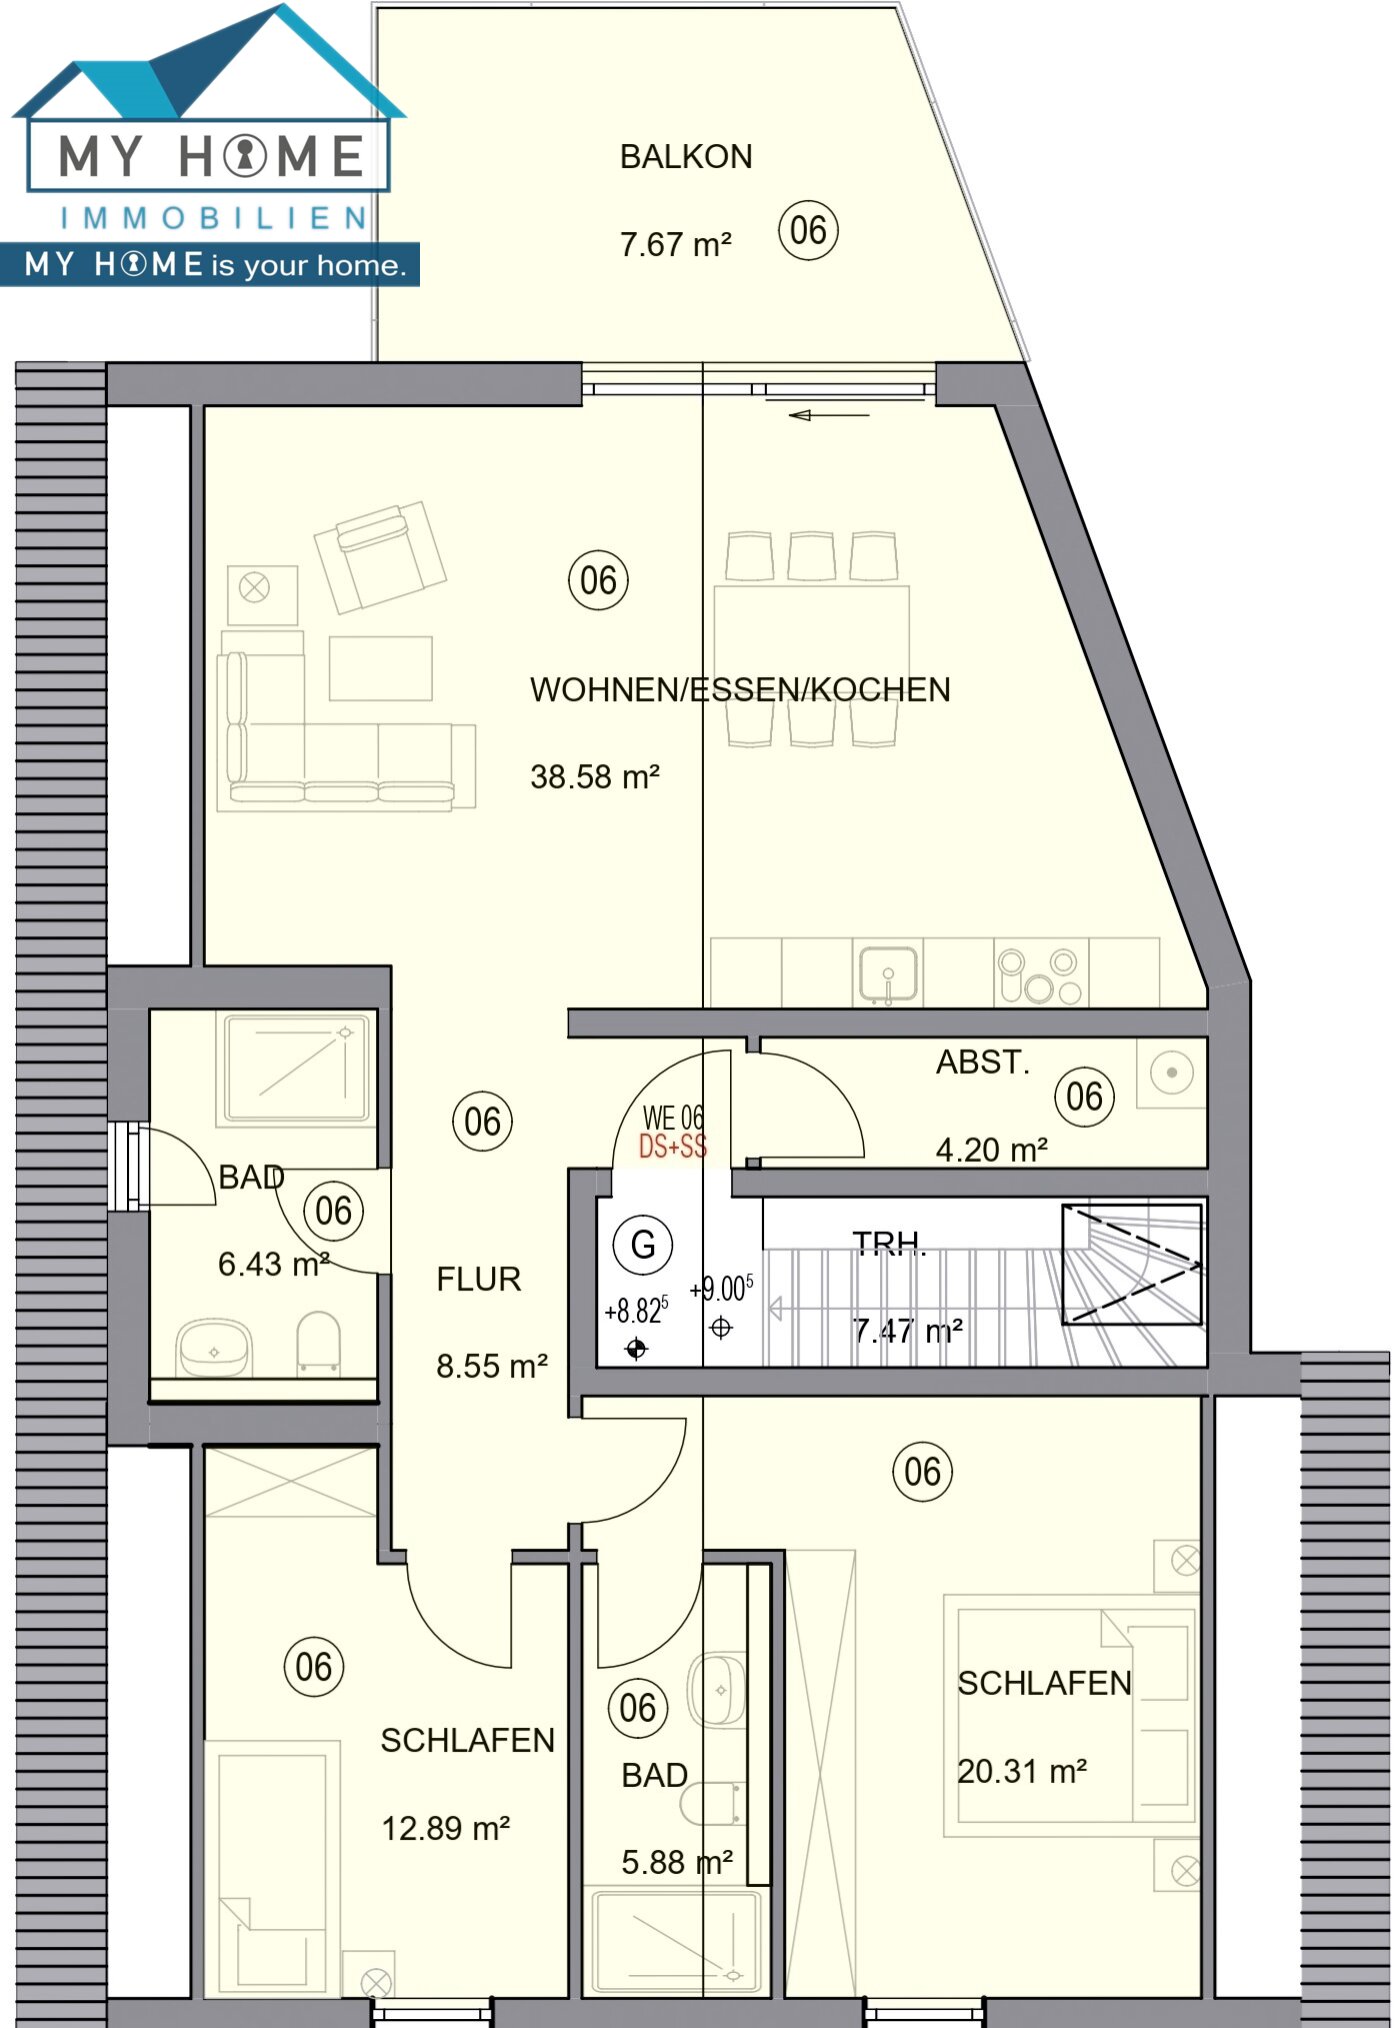 Wohnung  Maisonette Obergeschoss , ca. 107 m²